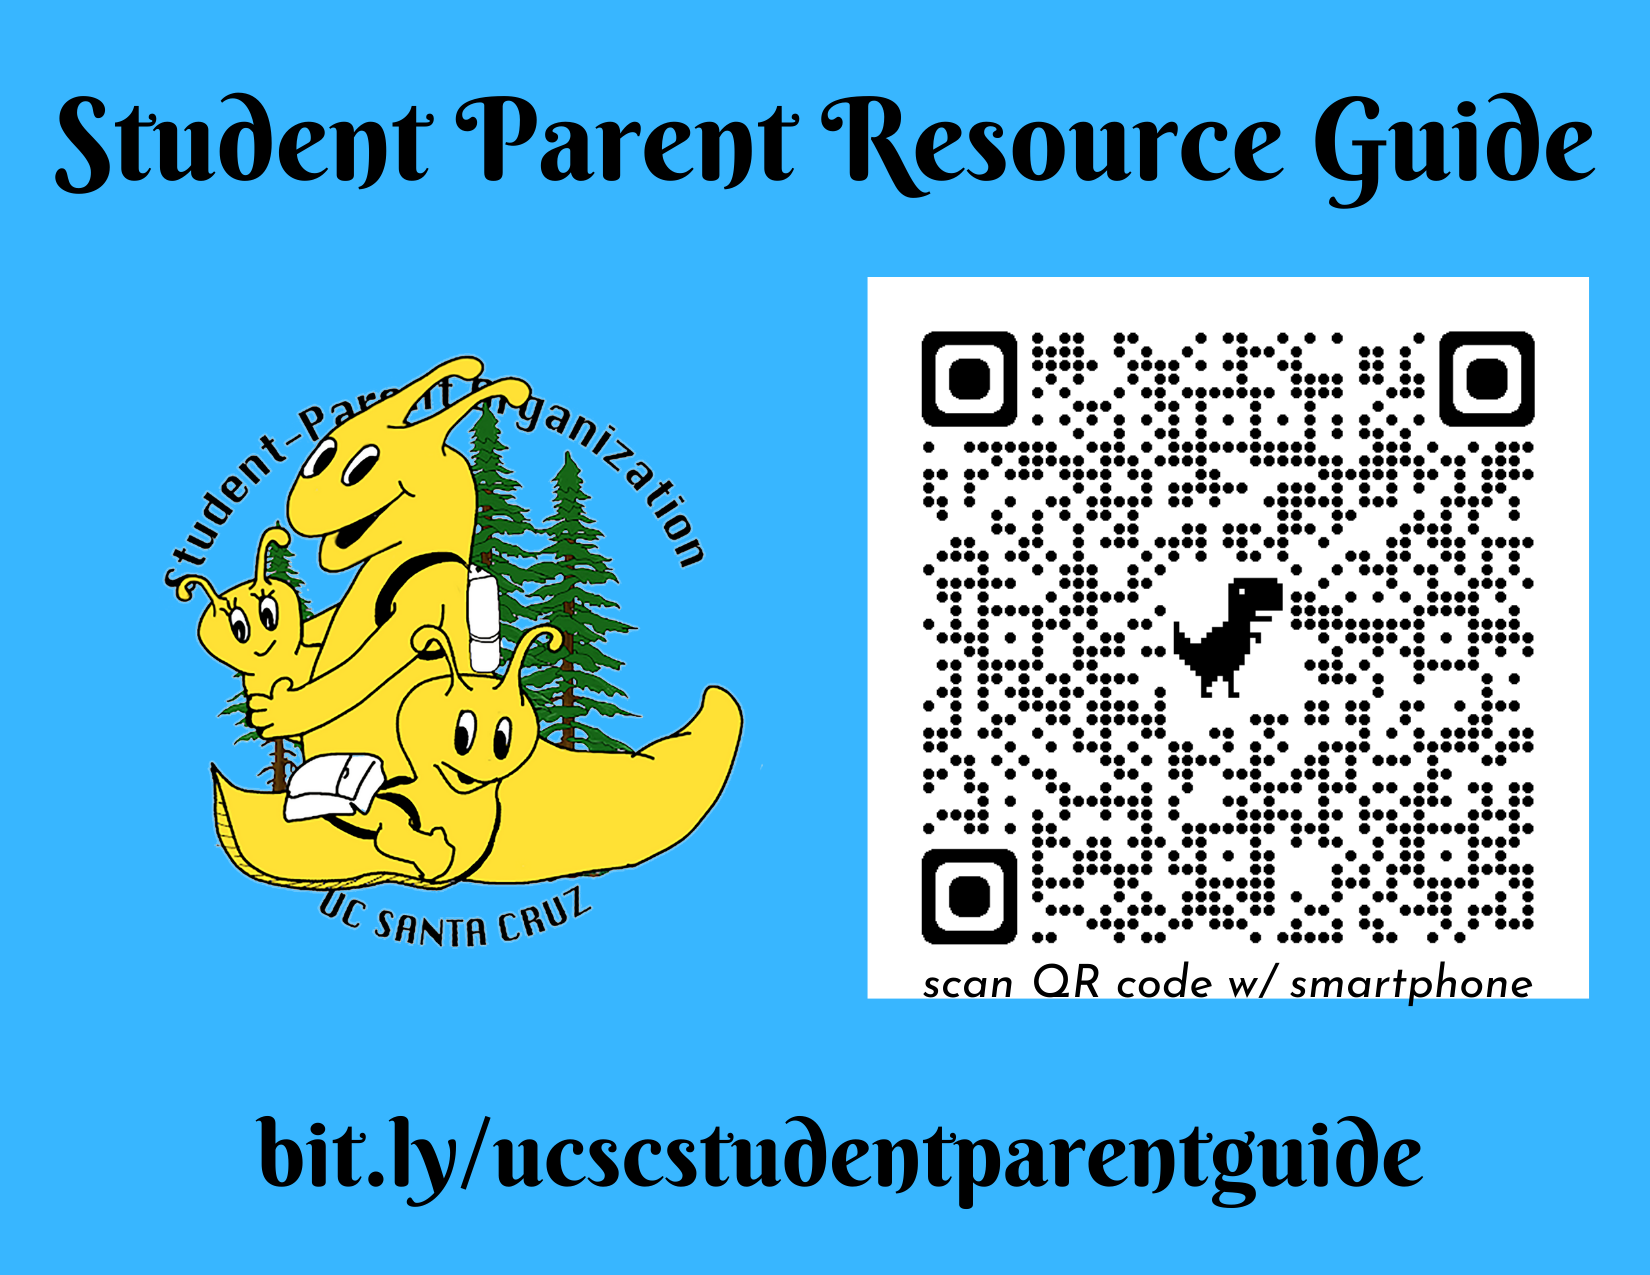 Student Parent Resource guide: https://bit.ly/ucscstudentparentguide